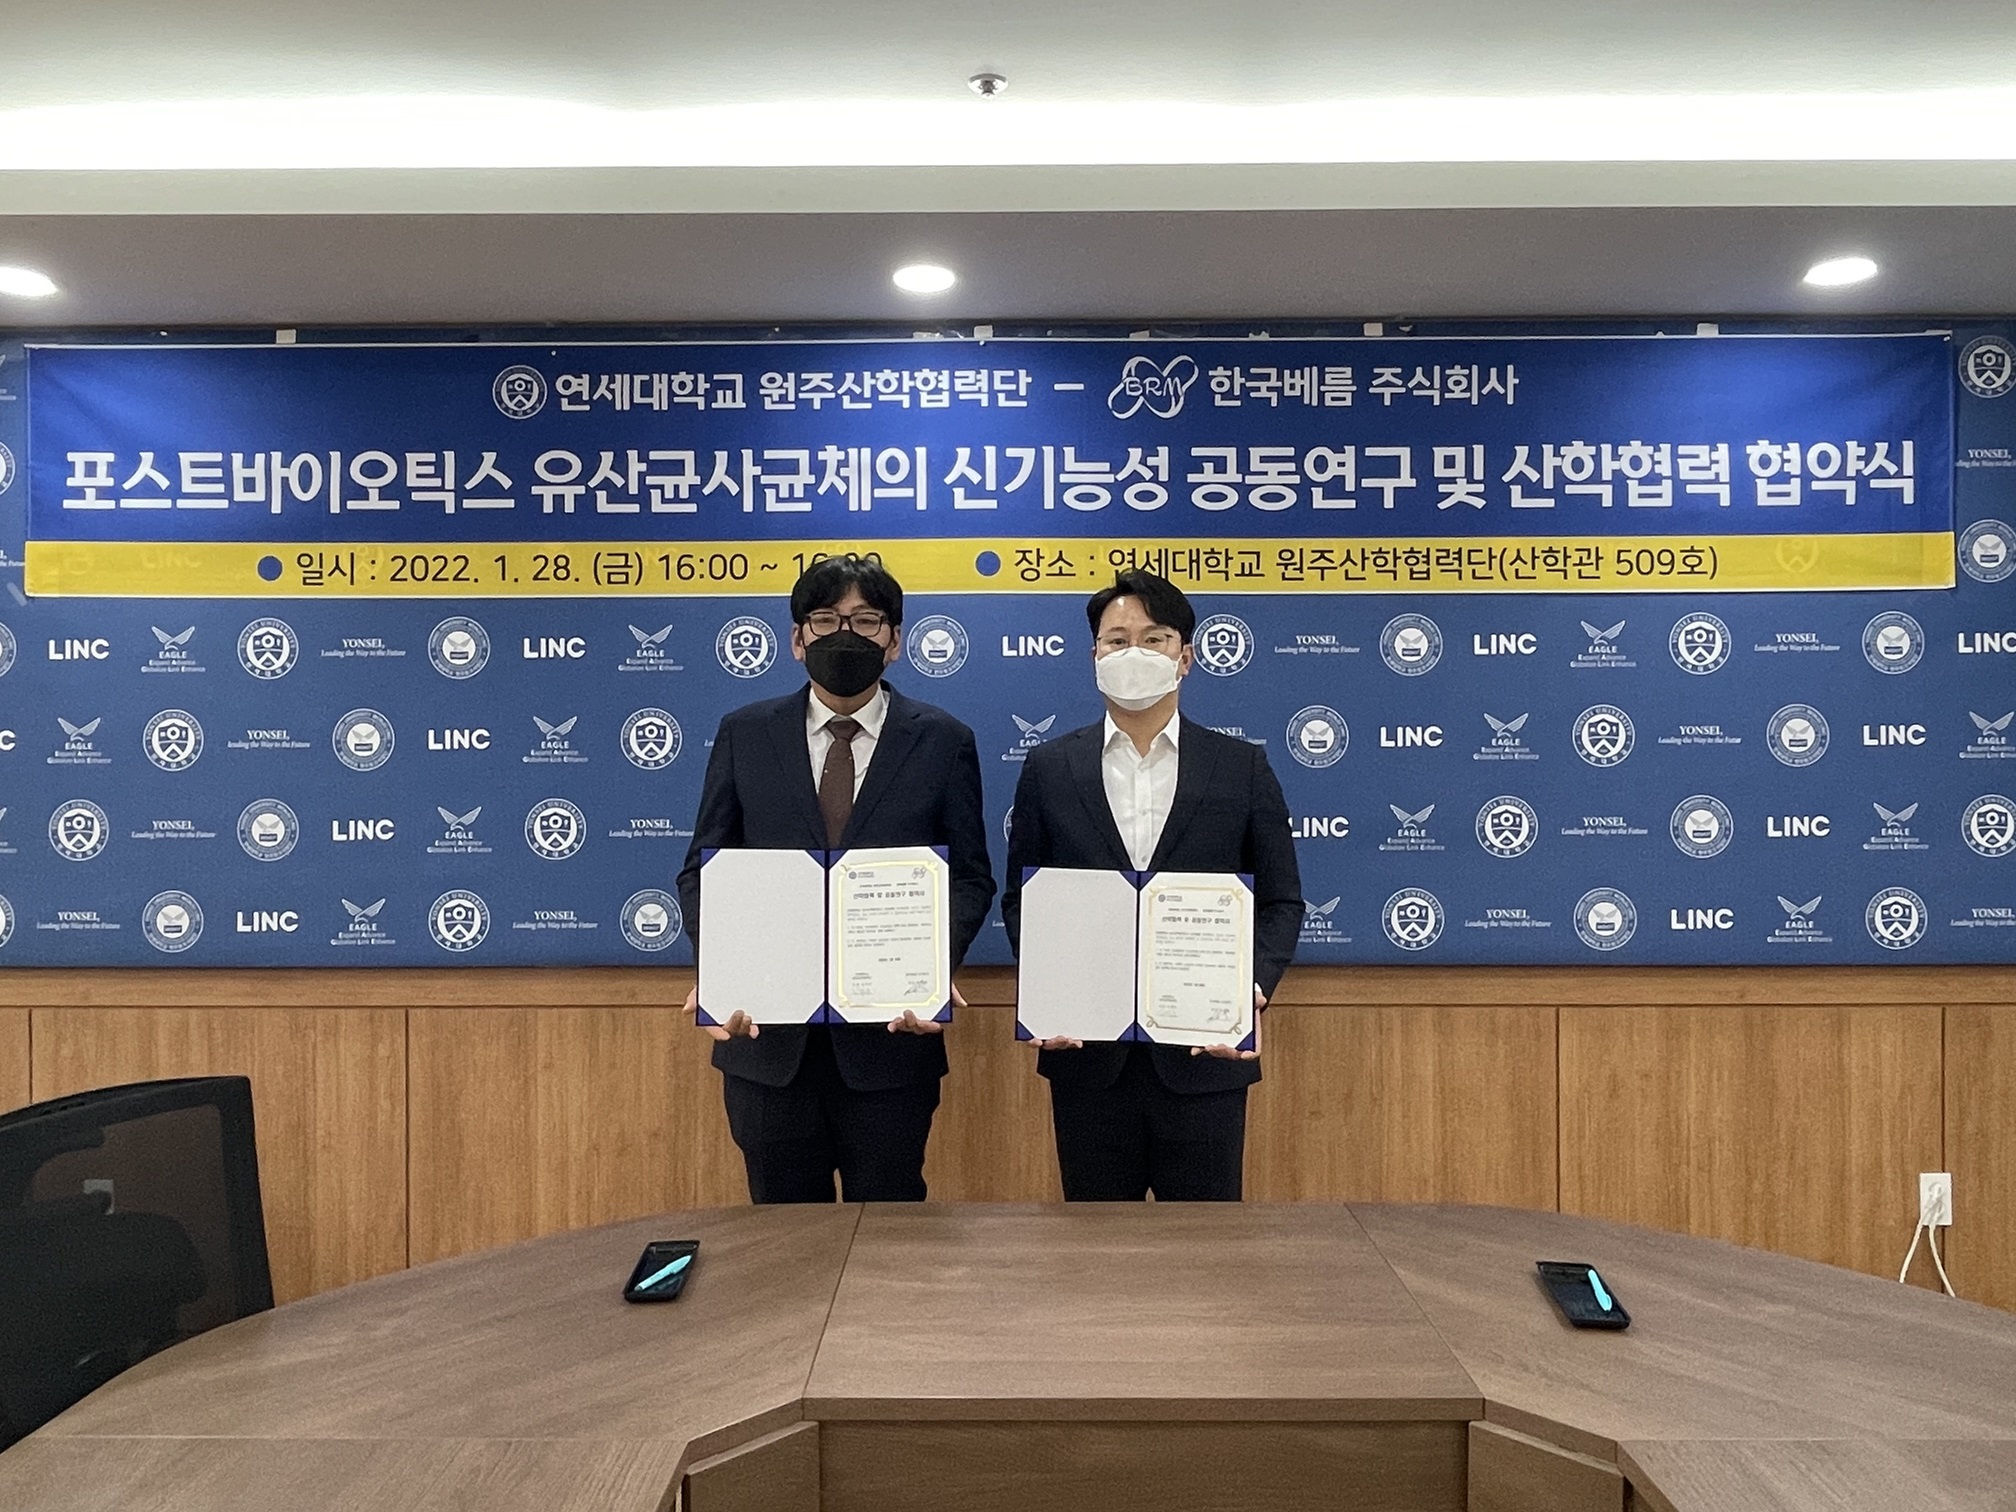 [2022. 2. 4.] 연세대학교 미래캠퍼스, 한국베름과 '포스트바이오틱스' 공동연구 산학협력 협약 체결